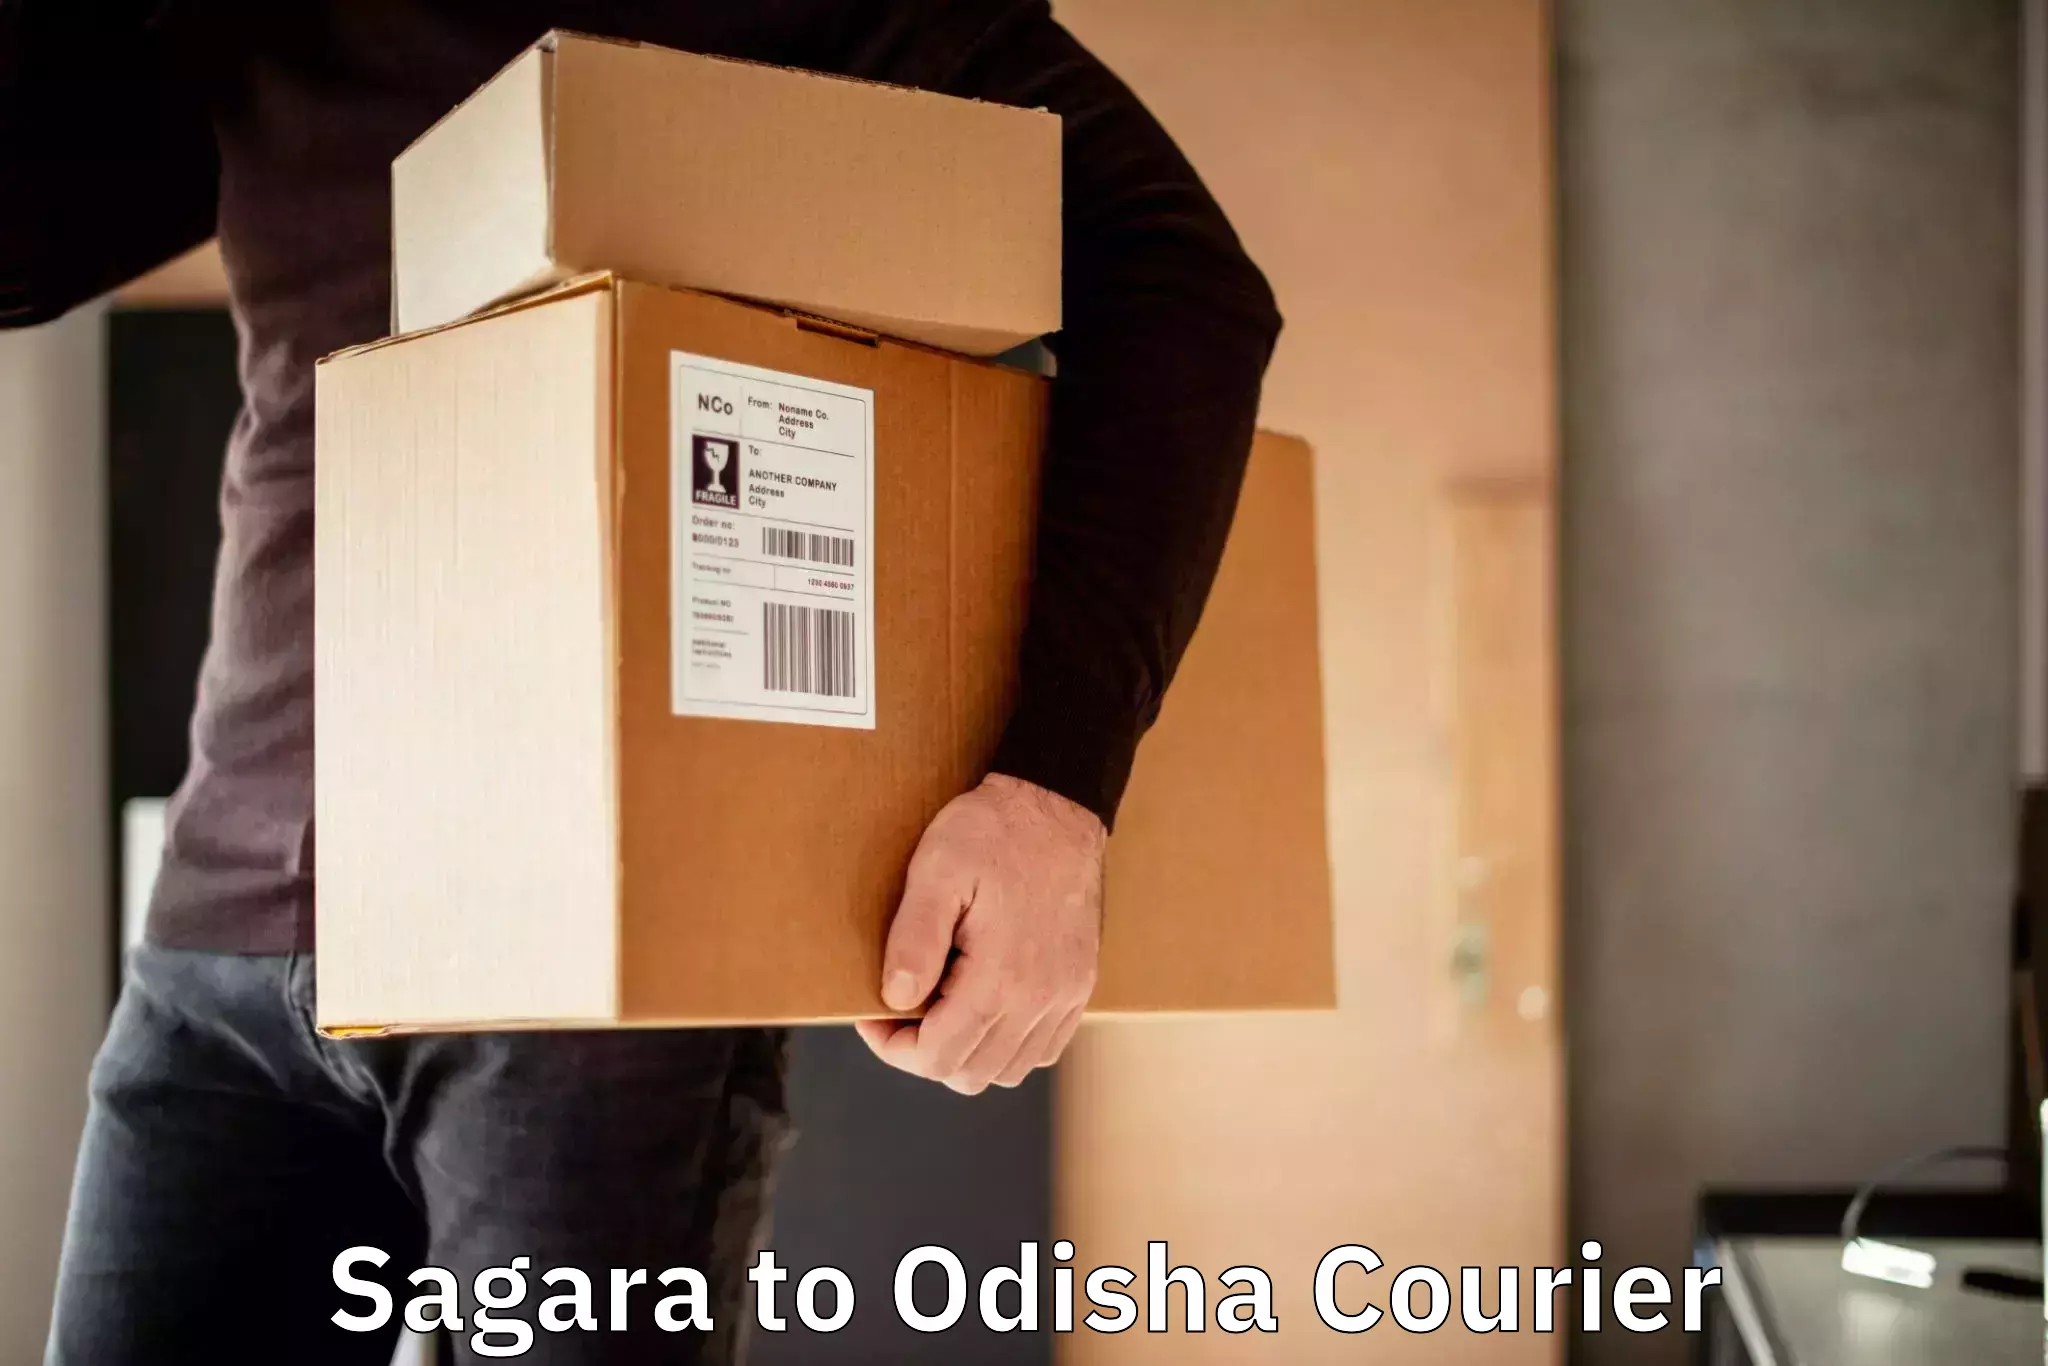 Local delivery service Sagara to Kendujhar